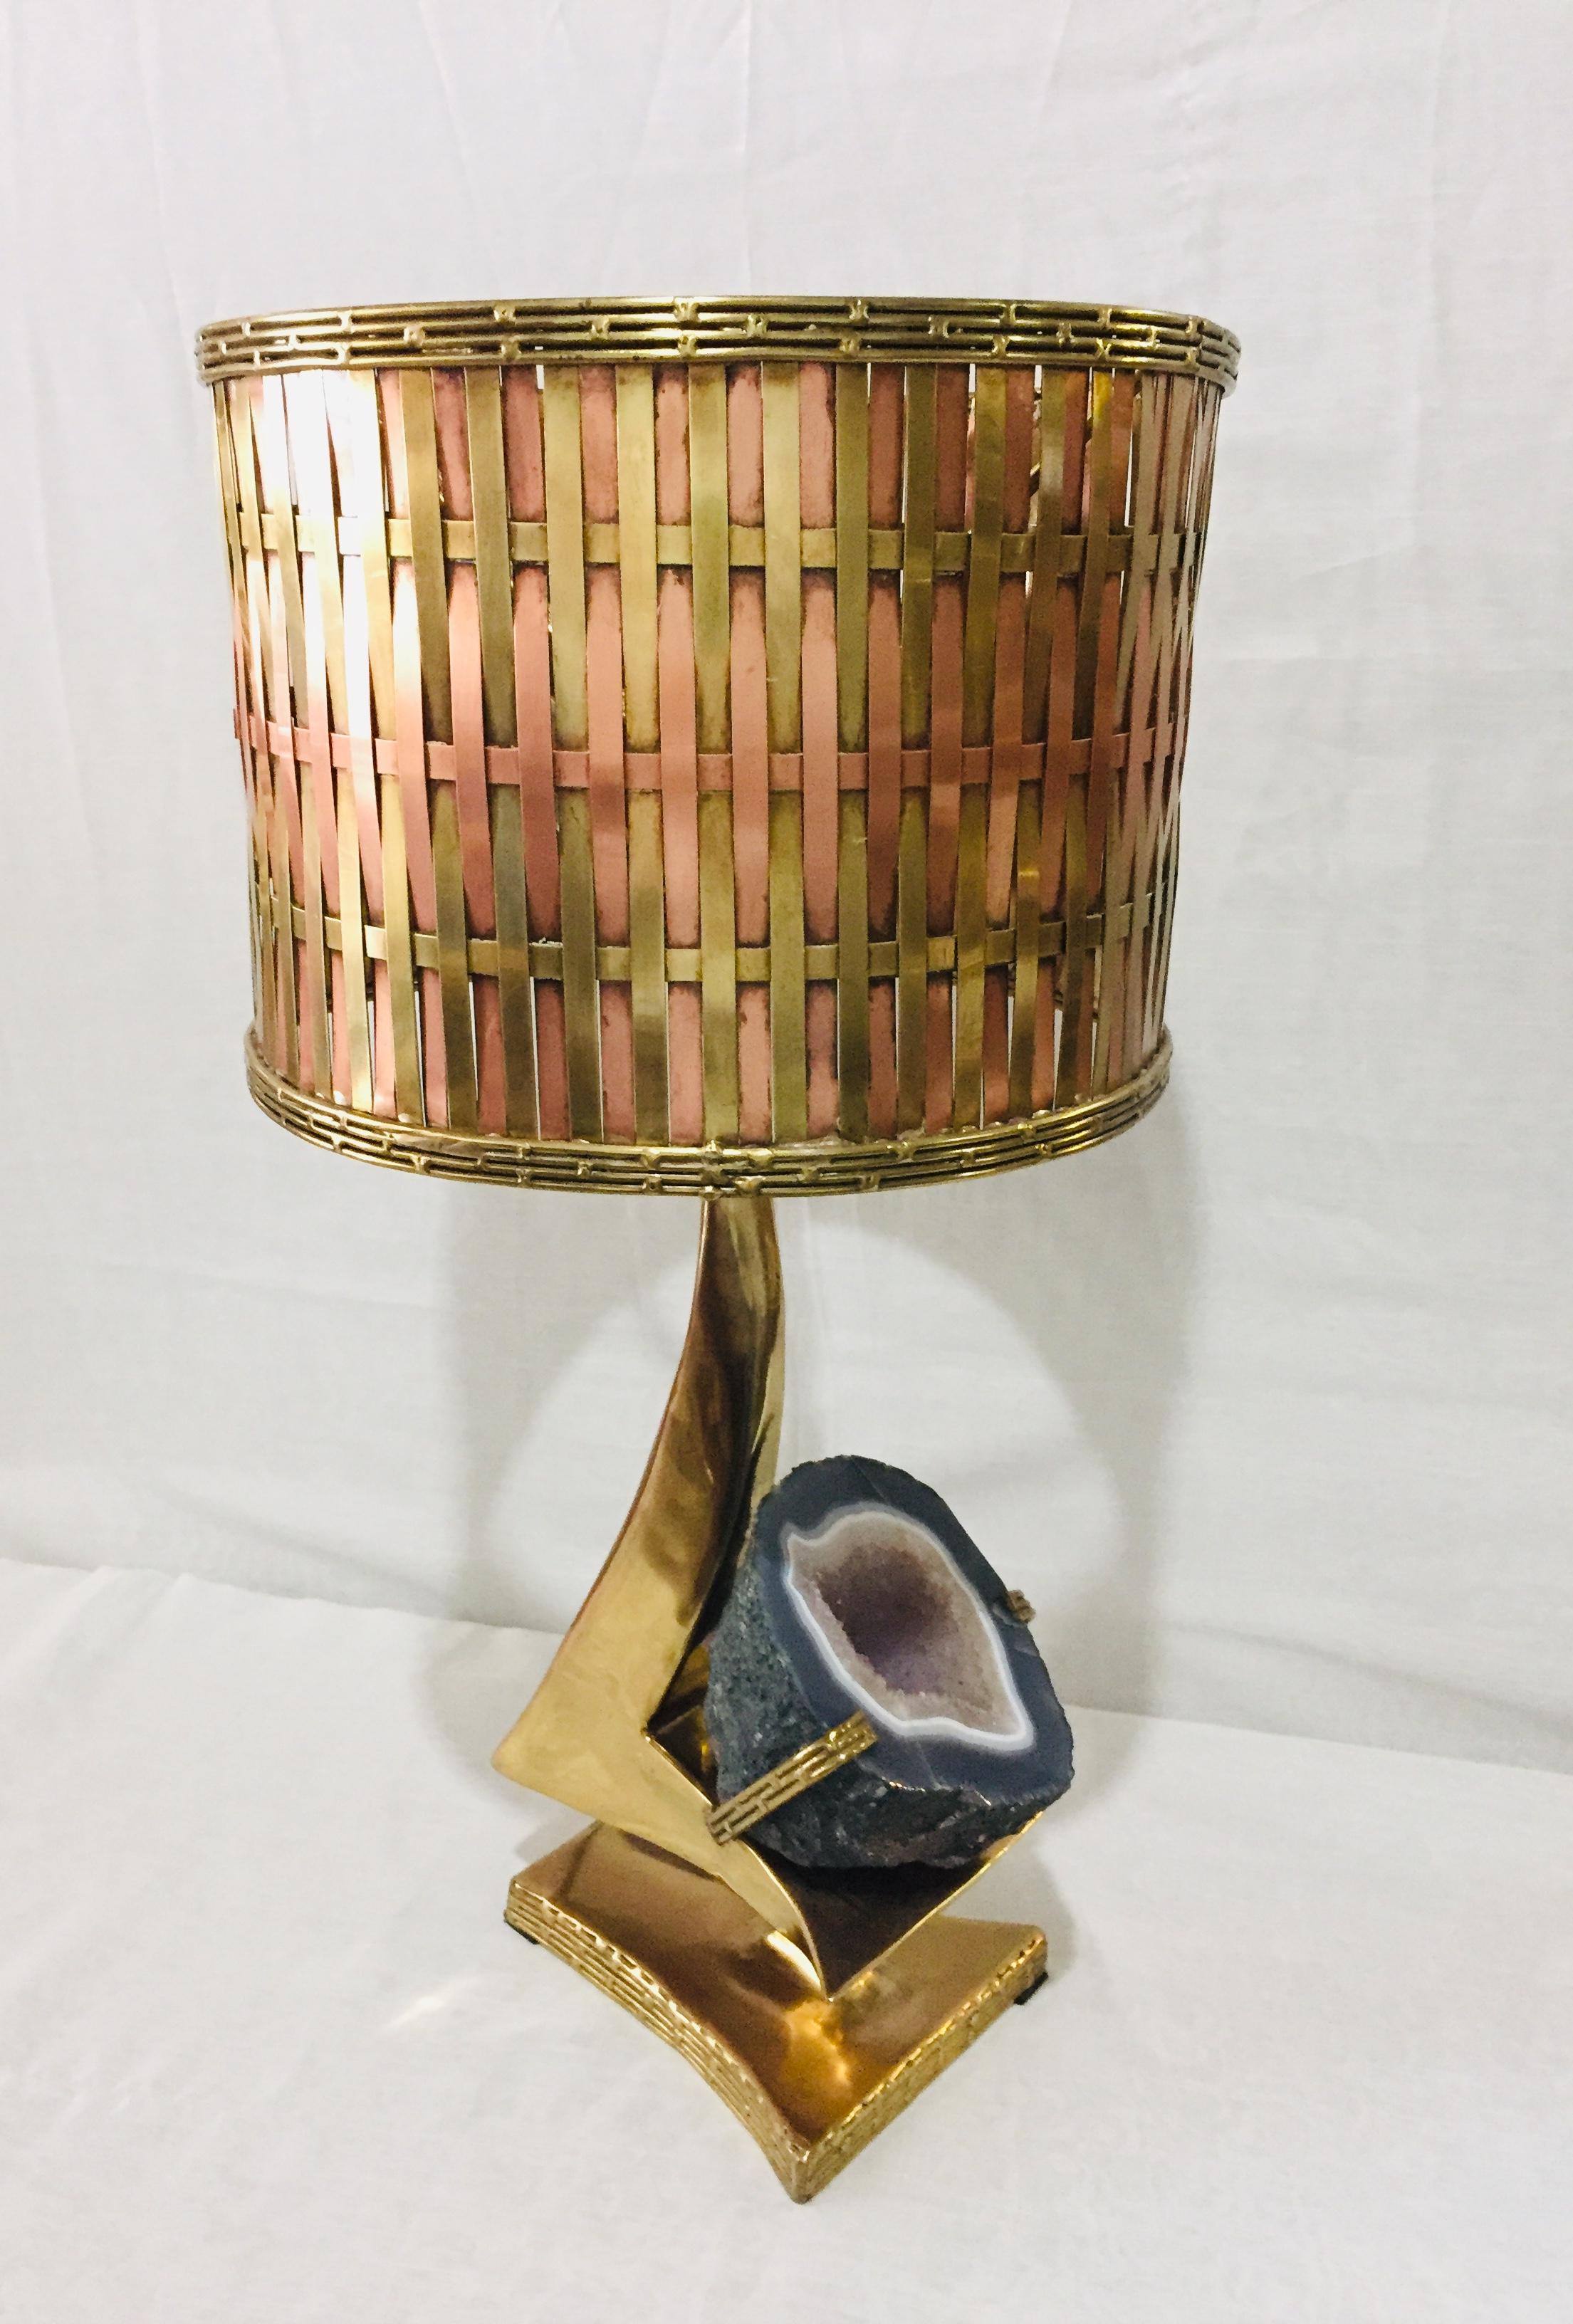 Sculpture lampe de table en laiton doré et quartz rose l Geode, sculpteur Jacques Duval Brasseur ( 1934 )
L'abat-jour fait également partie de la sculpture, en laiton doré, mais ces deux pièces ne font qu'un.
Câblé pour les États-Unis récemment.